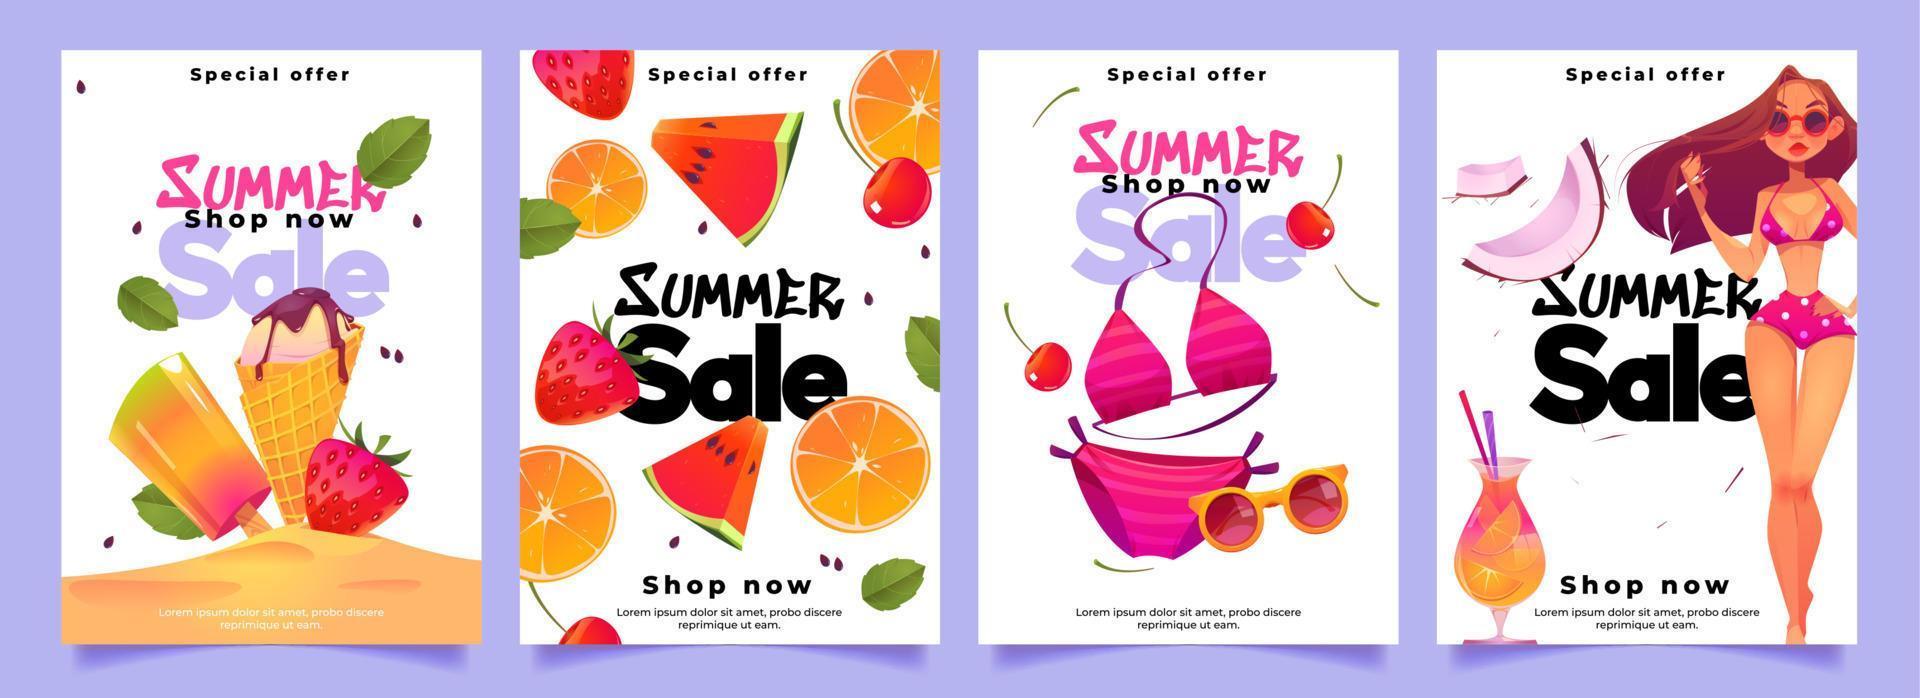 banners de venta de verano con mujer, fruta y cóctel vector